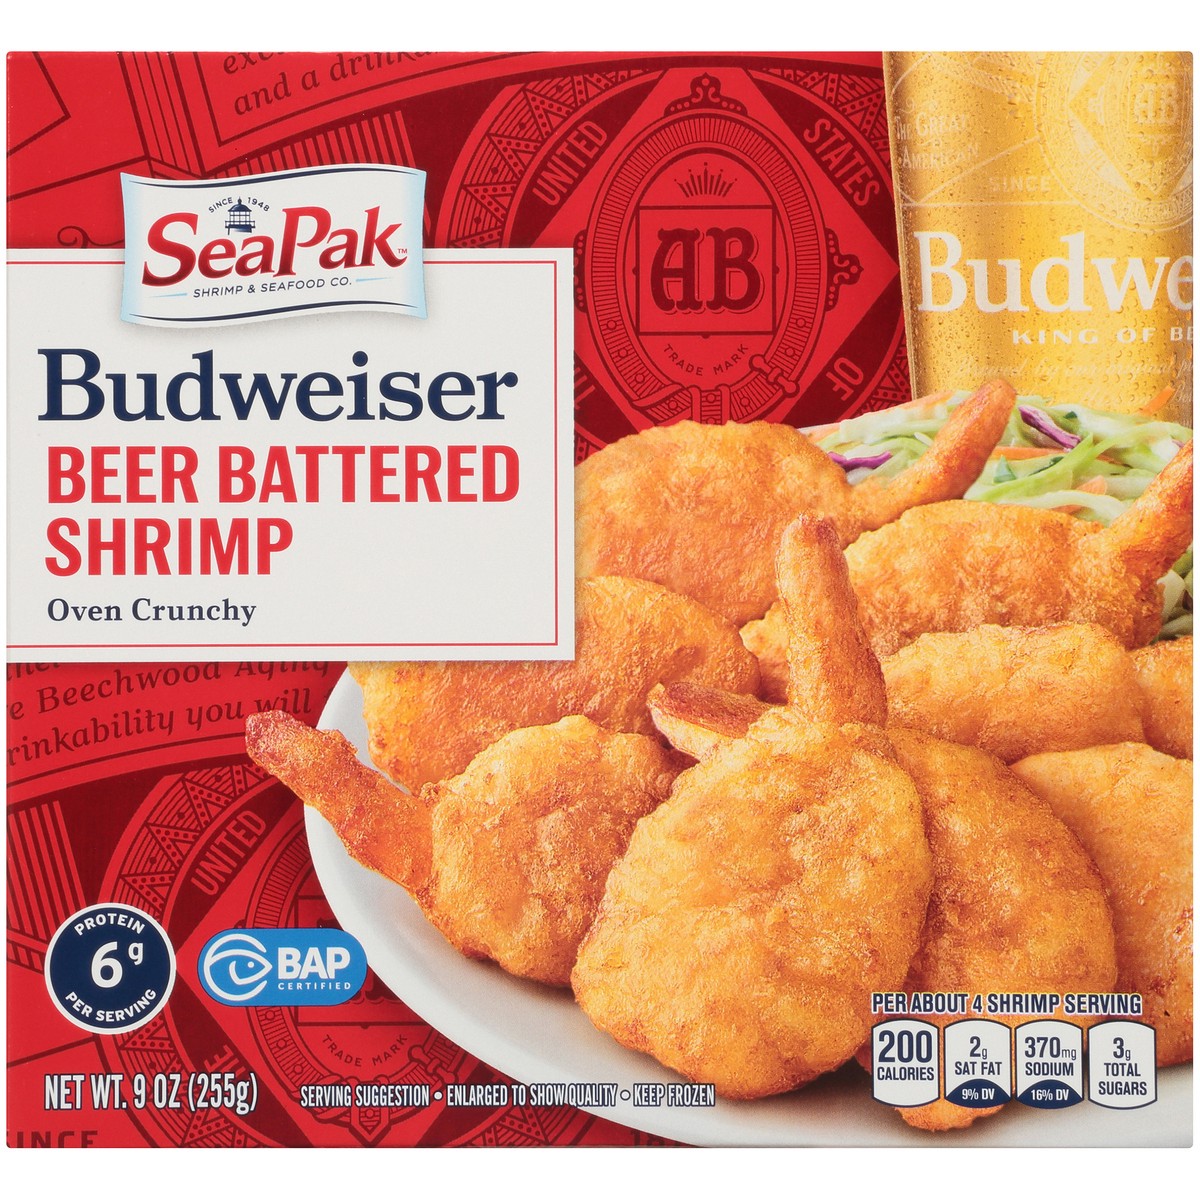 slide 12 of 14, SeaPak Shrimp & Seafood Co. Budweiser Oven Crunchy Beer Battered Shrimp 9 oz. Box, 9 oz